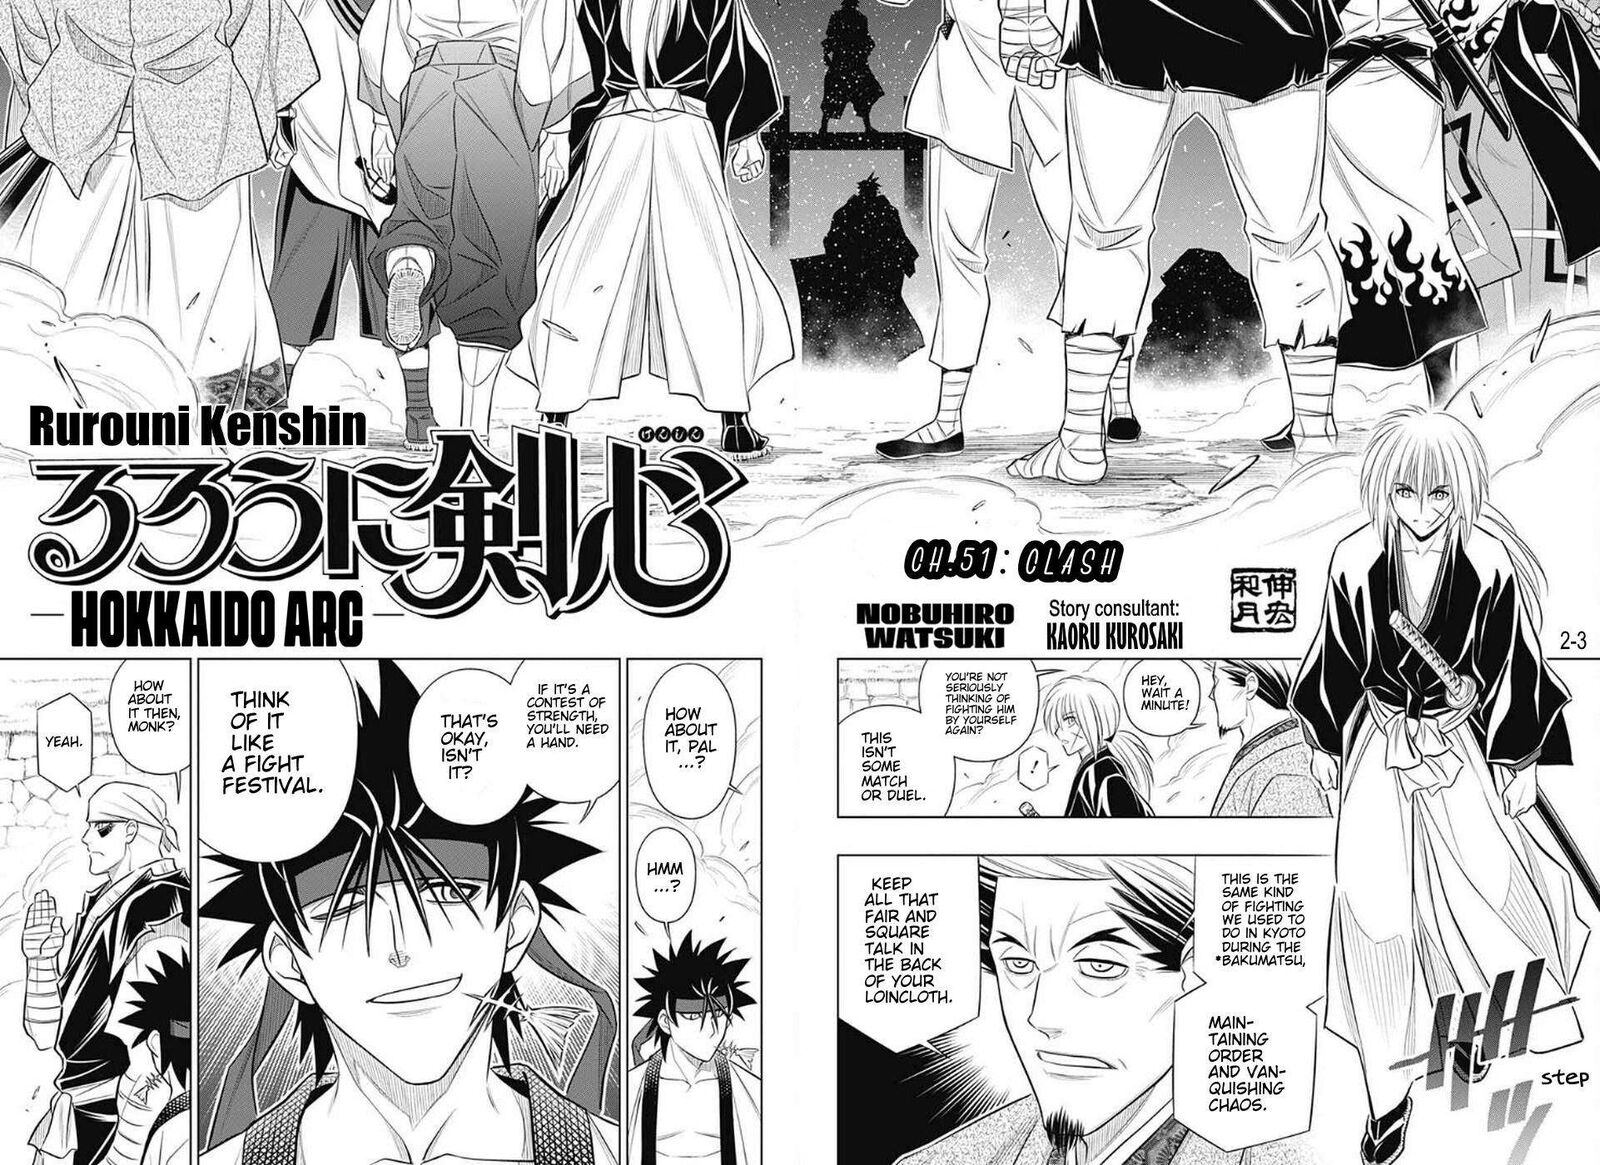 Rurouni Kenshin Hokkaido Arc Chapter 51 Page 2